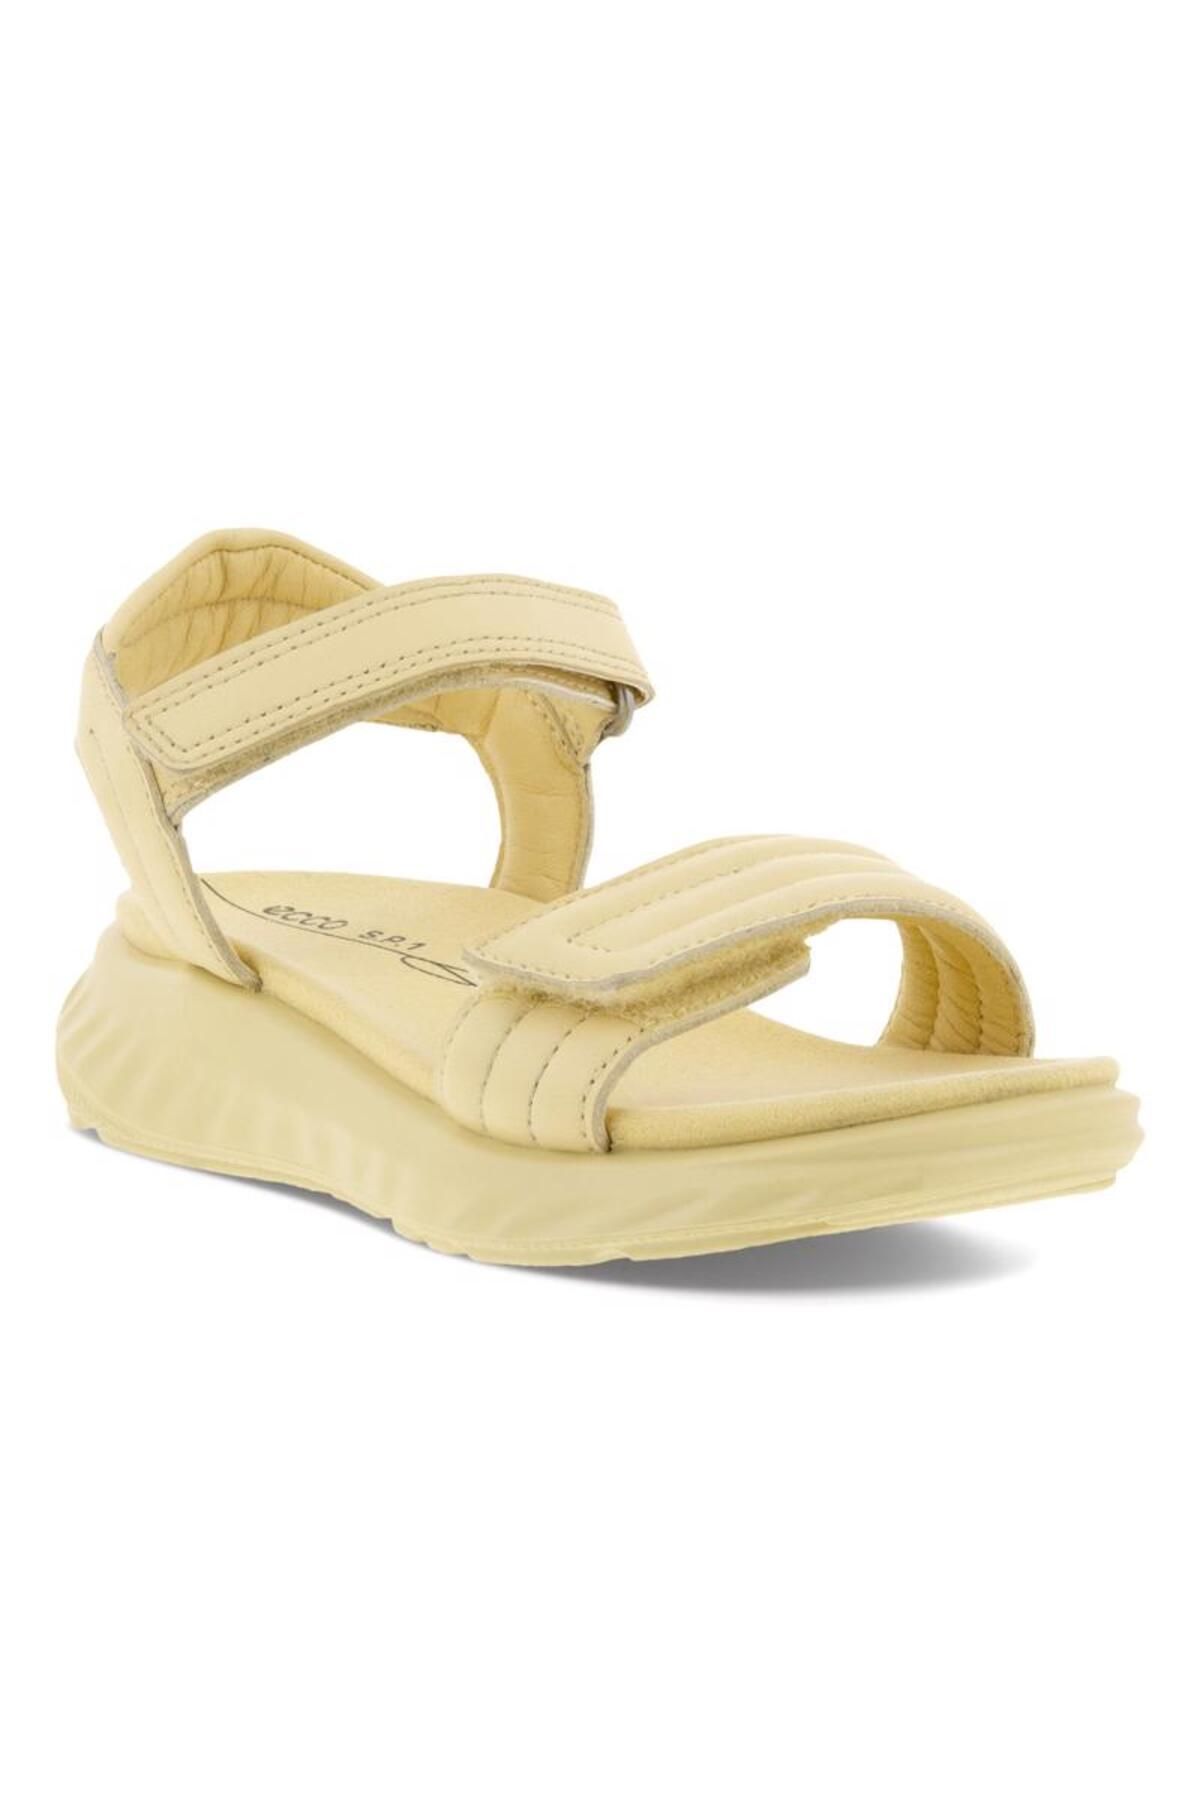 Ecco Sp1 Lite Sandal K Straw